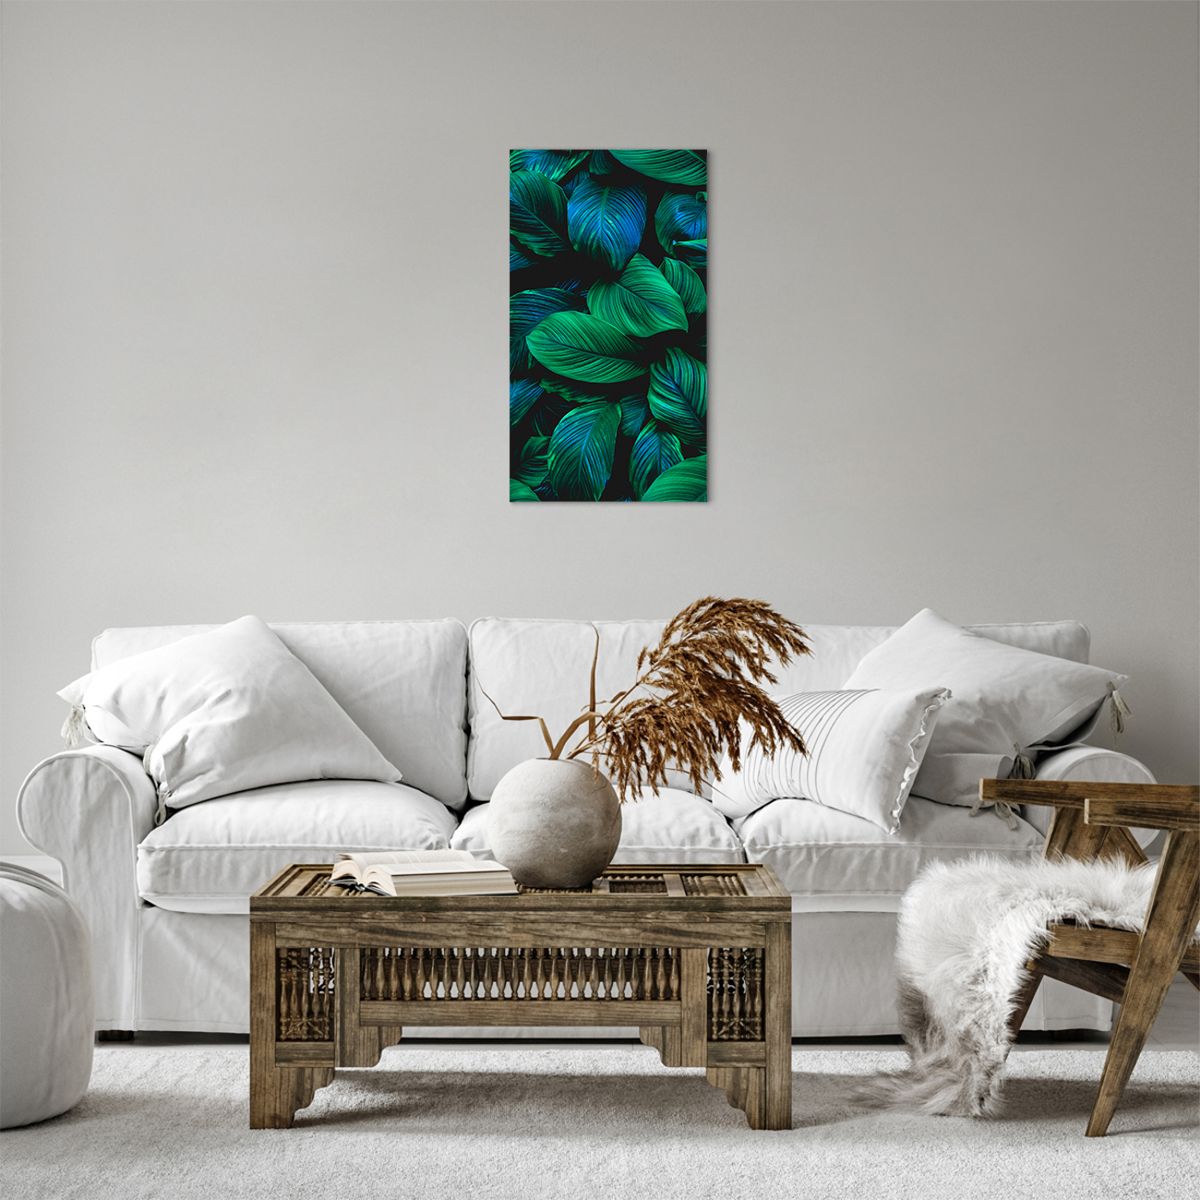 Bild auf Leinwand Grüne Blätter, Bild auf Leinwand Tropische Pflanze, Bild auf Leinwand Natur, Bild auf Leinwand Kunst, Bild auf Leinwand Tropen